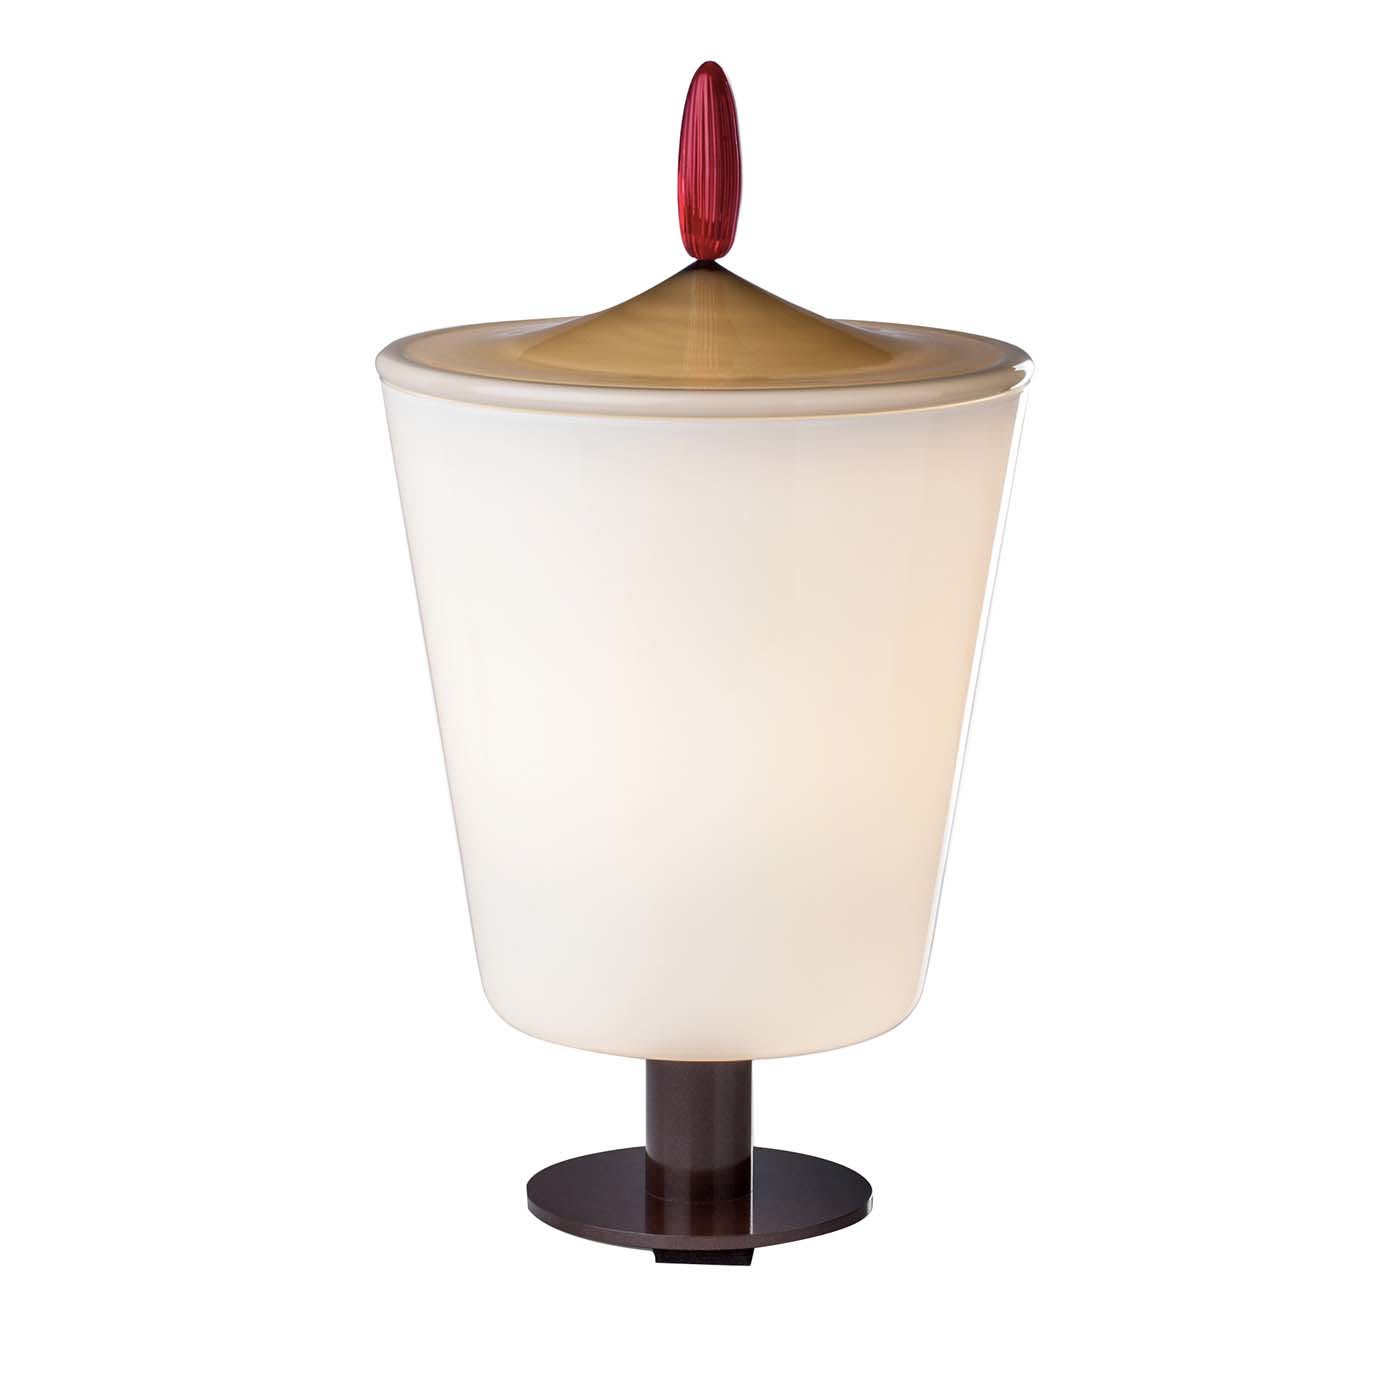 Lou Table Lamp by Aldo Cibic # 2 - Venini